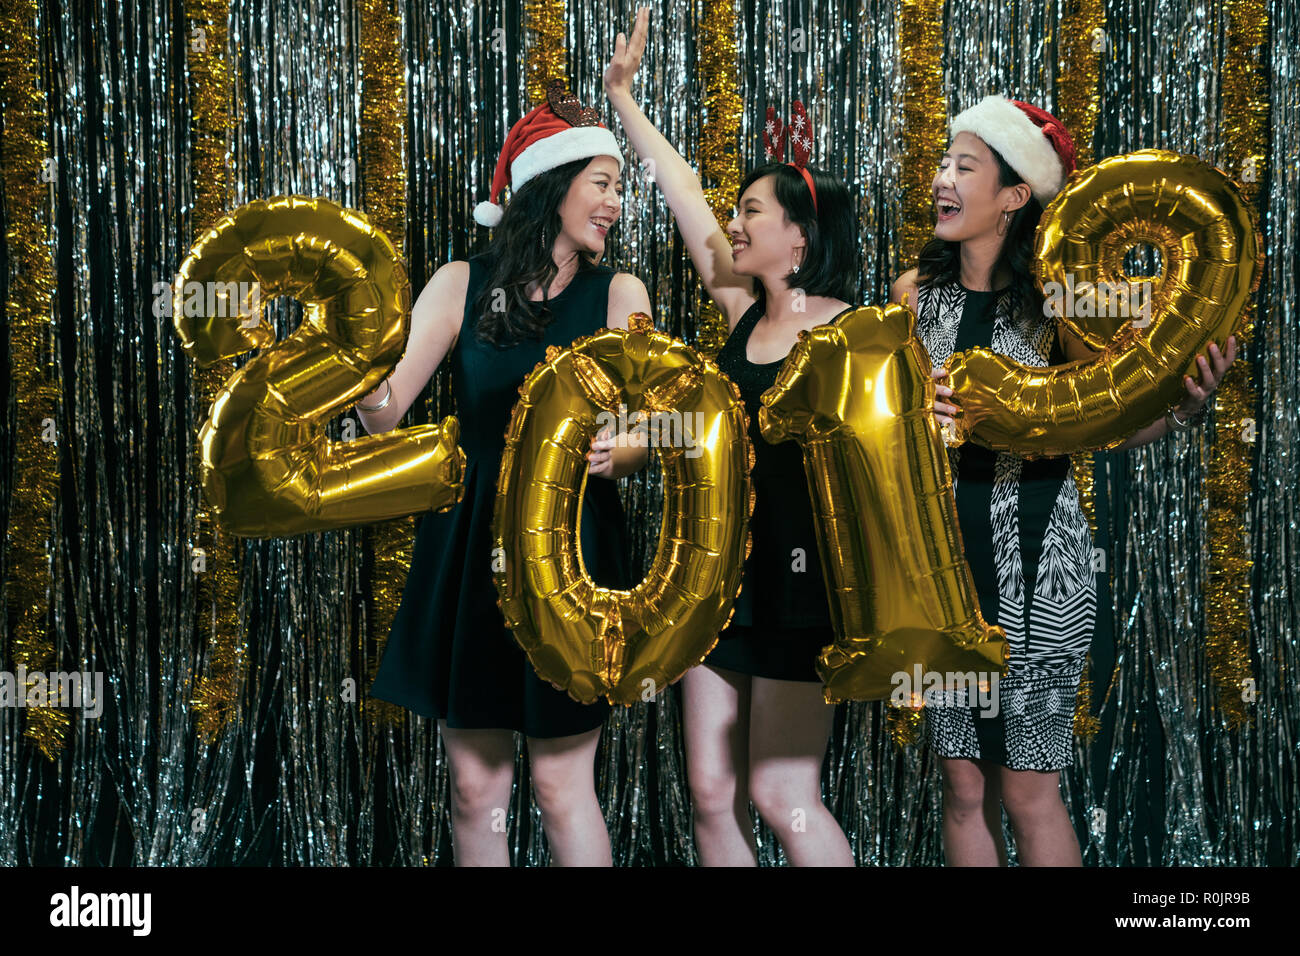 Damen mit Nikolausmützen und Rotwild Kostüme Spaß tanzen mit Gold 2019 neue Jahr Ballon auf Party. gerne schöne attraktive Winsome glamouröse Gor Stockfoto